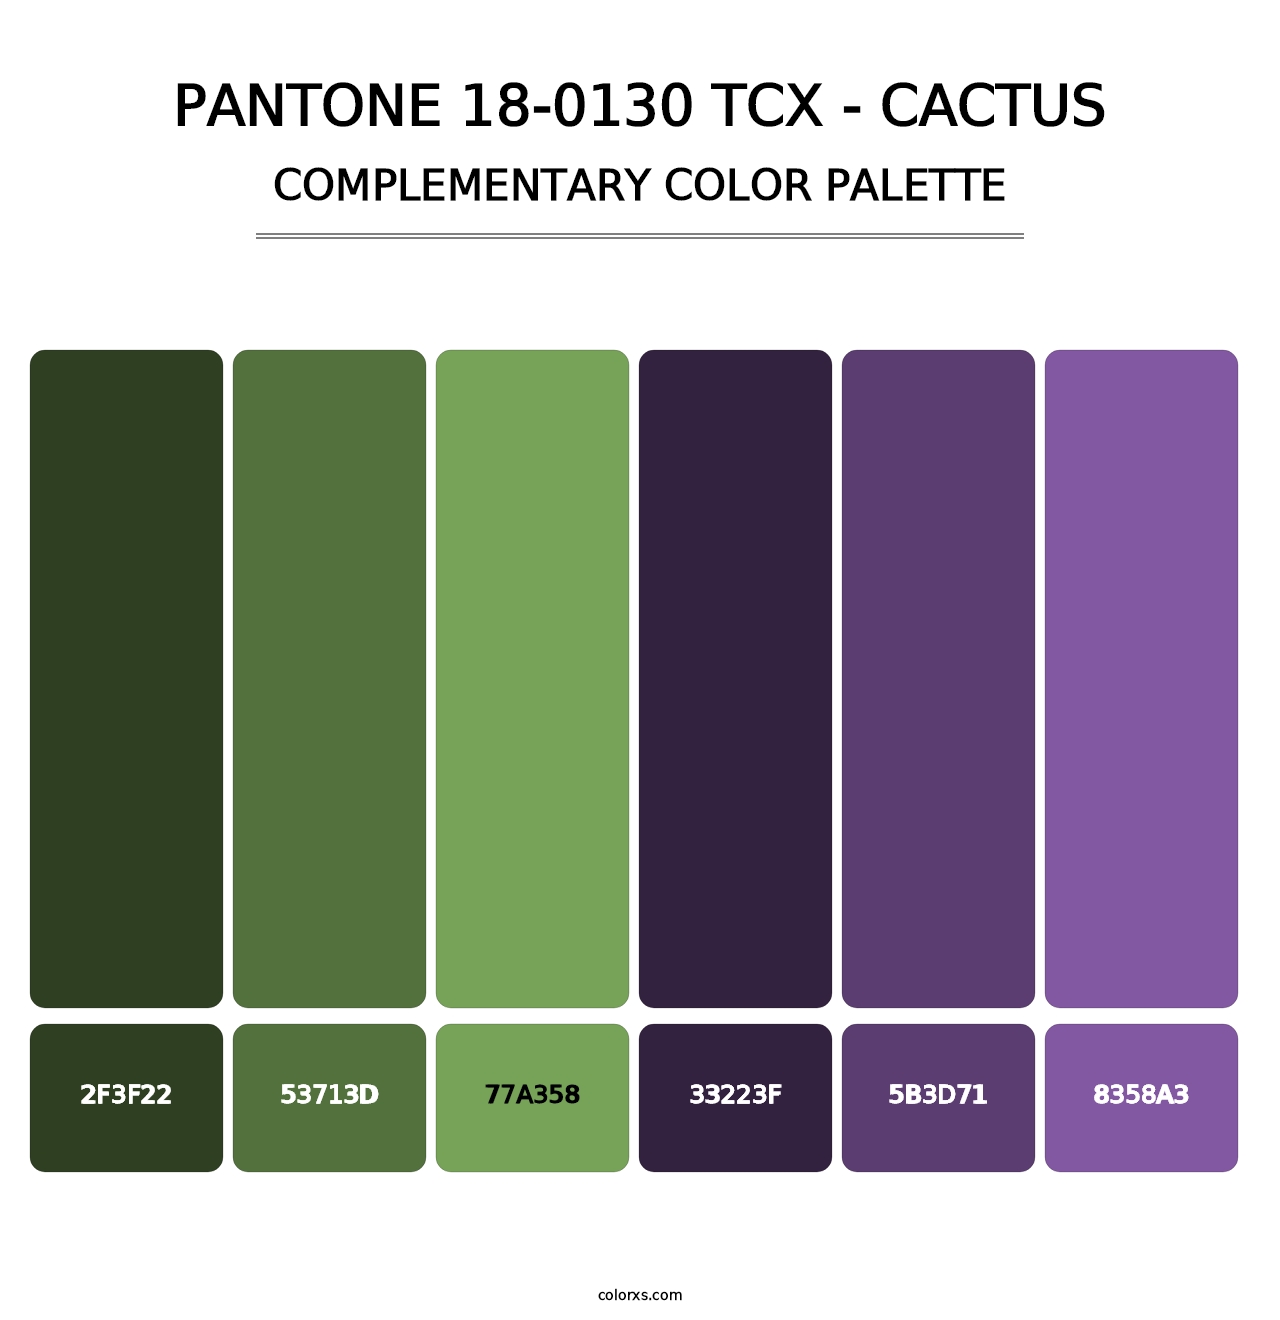 PANTONE 18-0130 TCX - Cactus - Complementary Color Palette